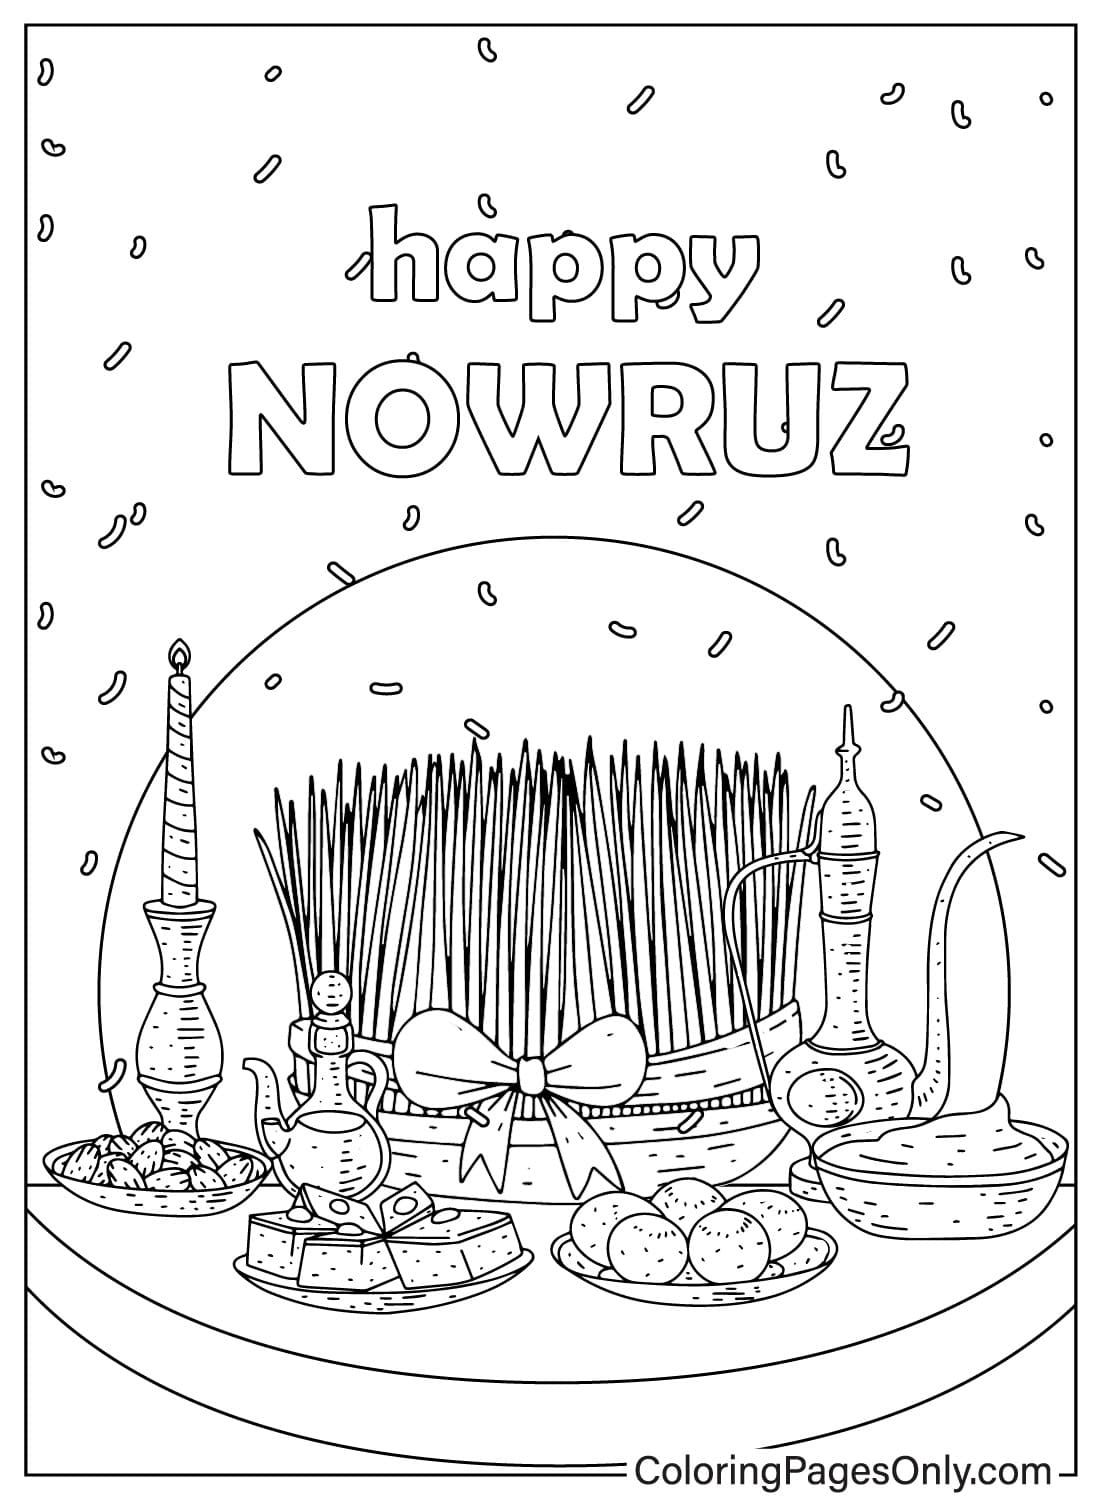 Hoja para colorear feliz Nowruz del Día Internacional del Nowruz